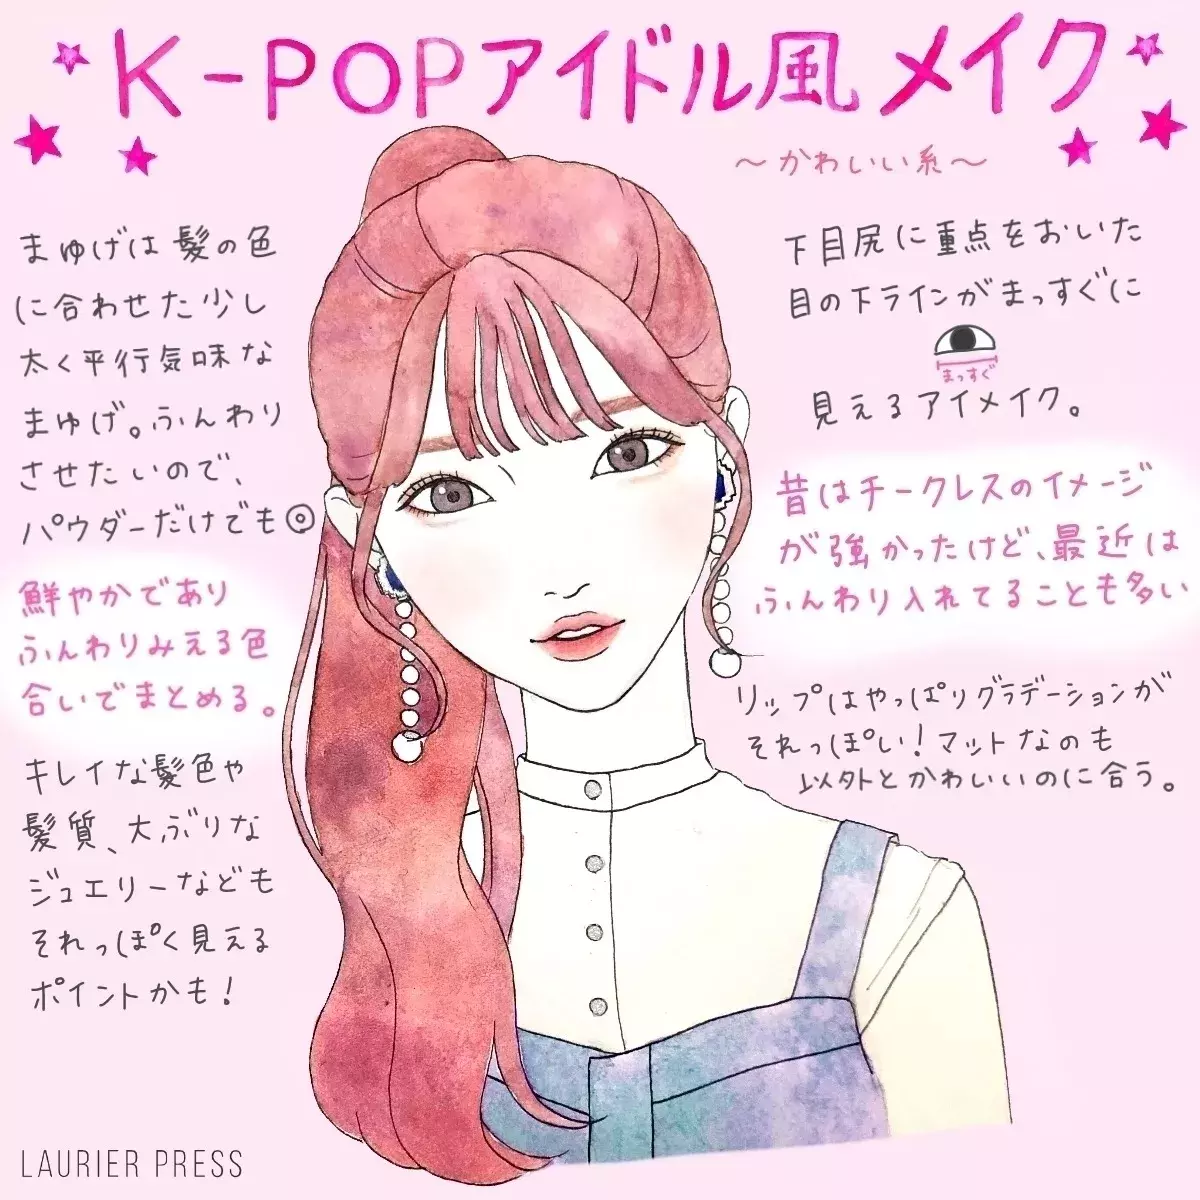 K Popアイドル風メイクのコツ かわいい系 かっこいい系の2パターン解説 ローリエプレス